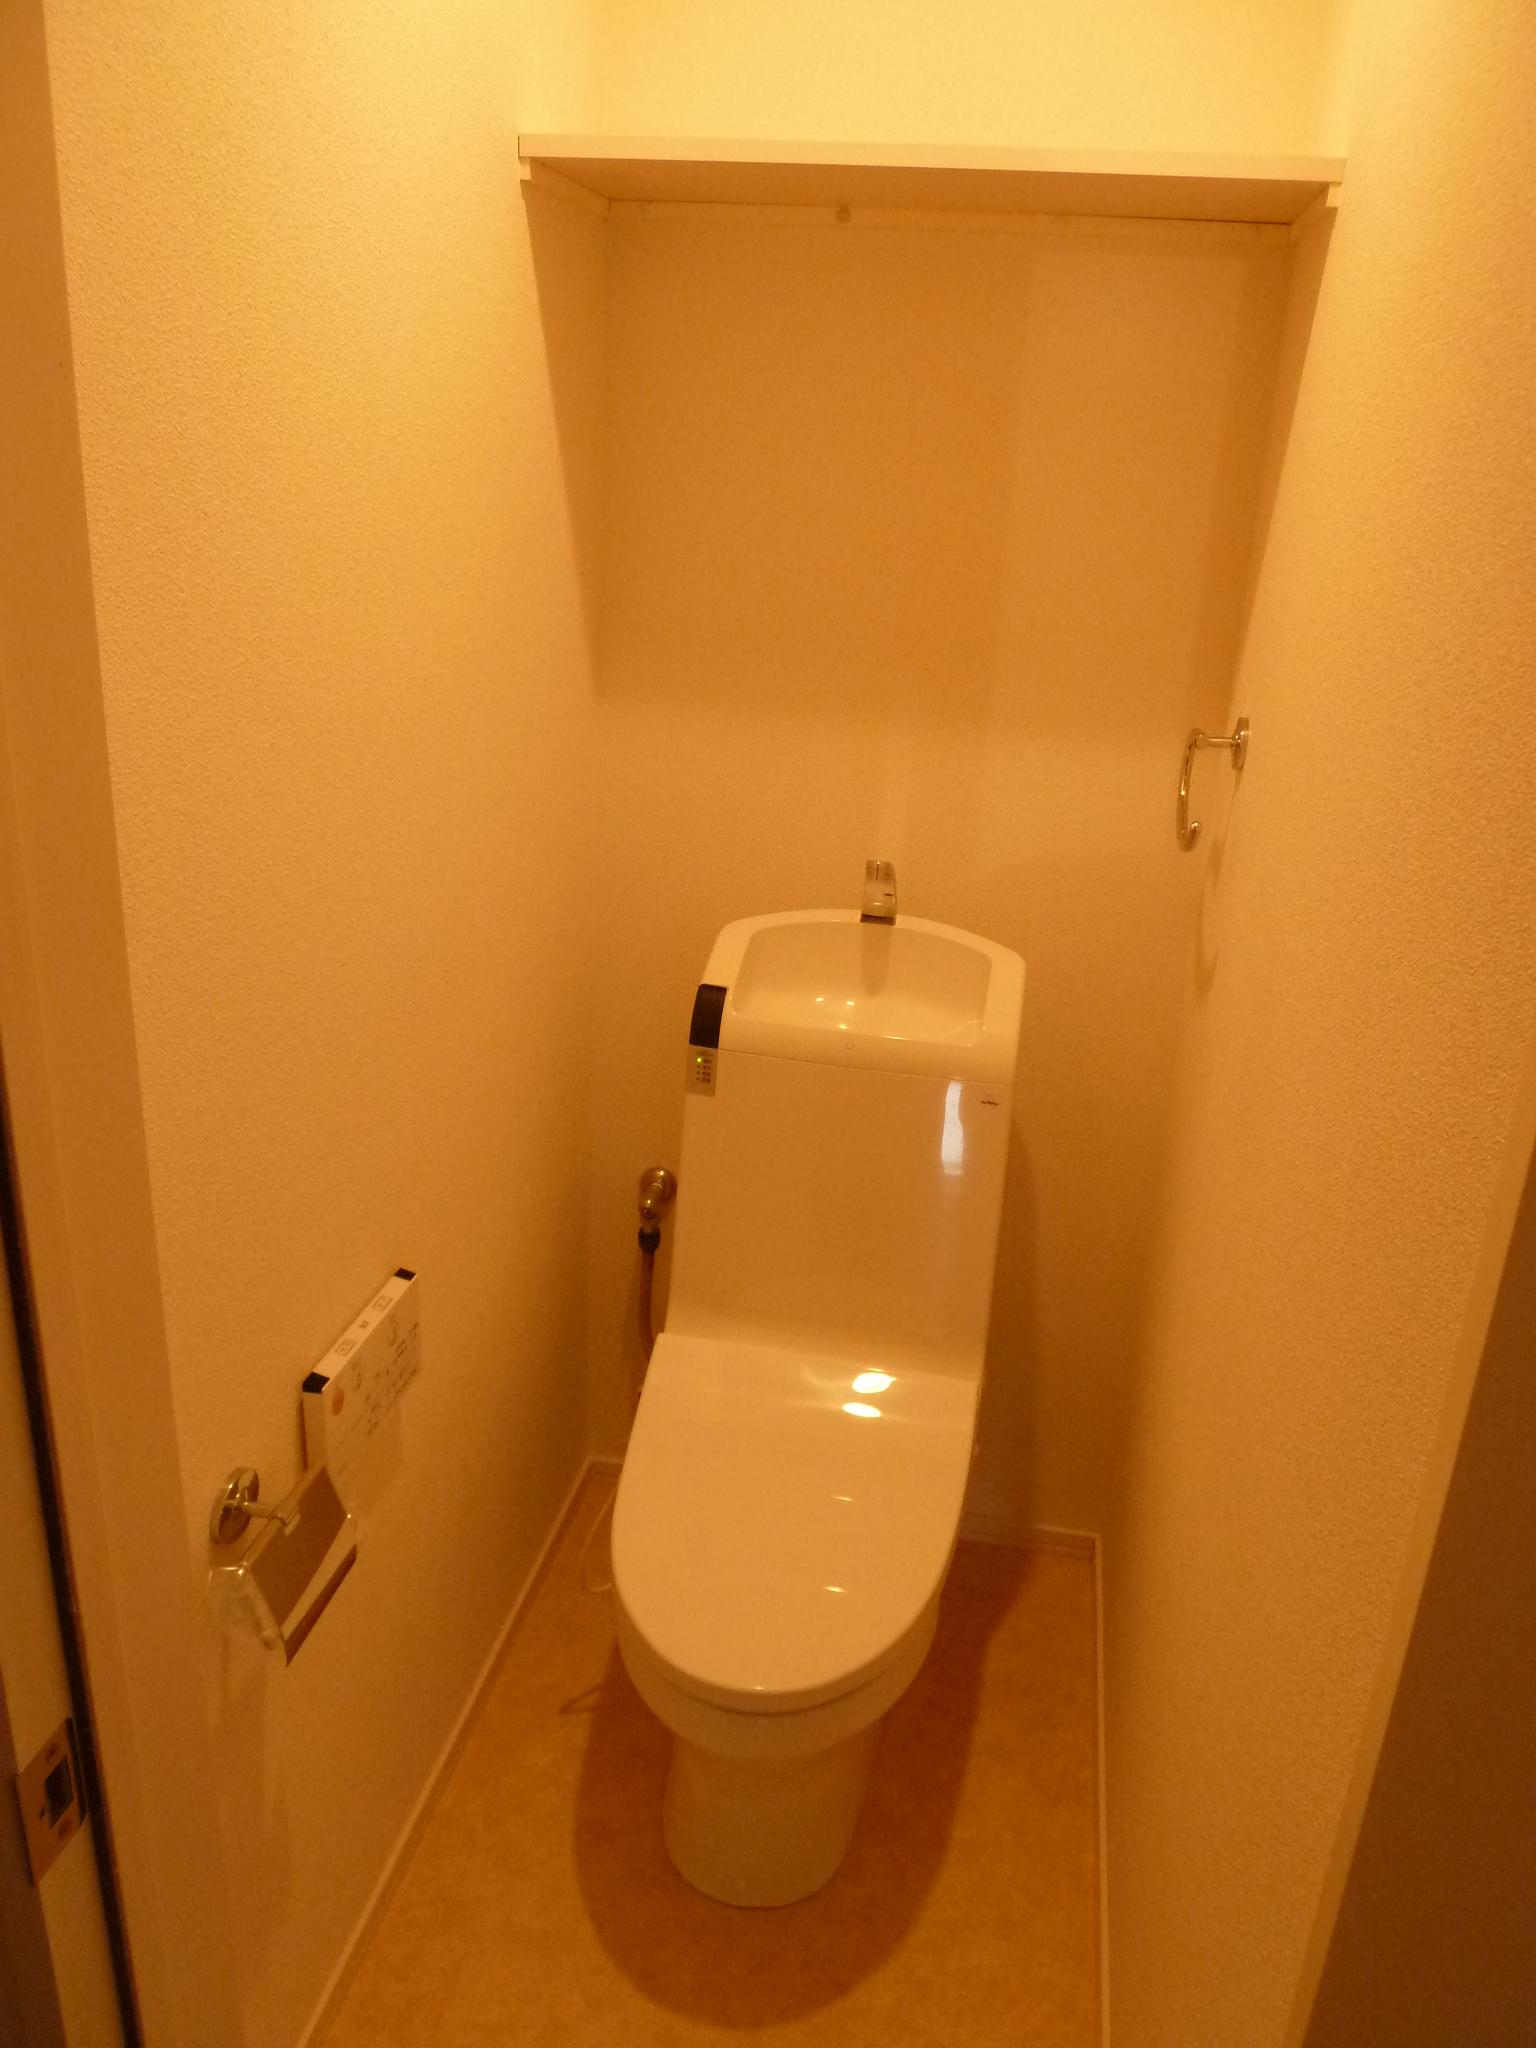 Toilet. Toilet (Photo 201)